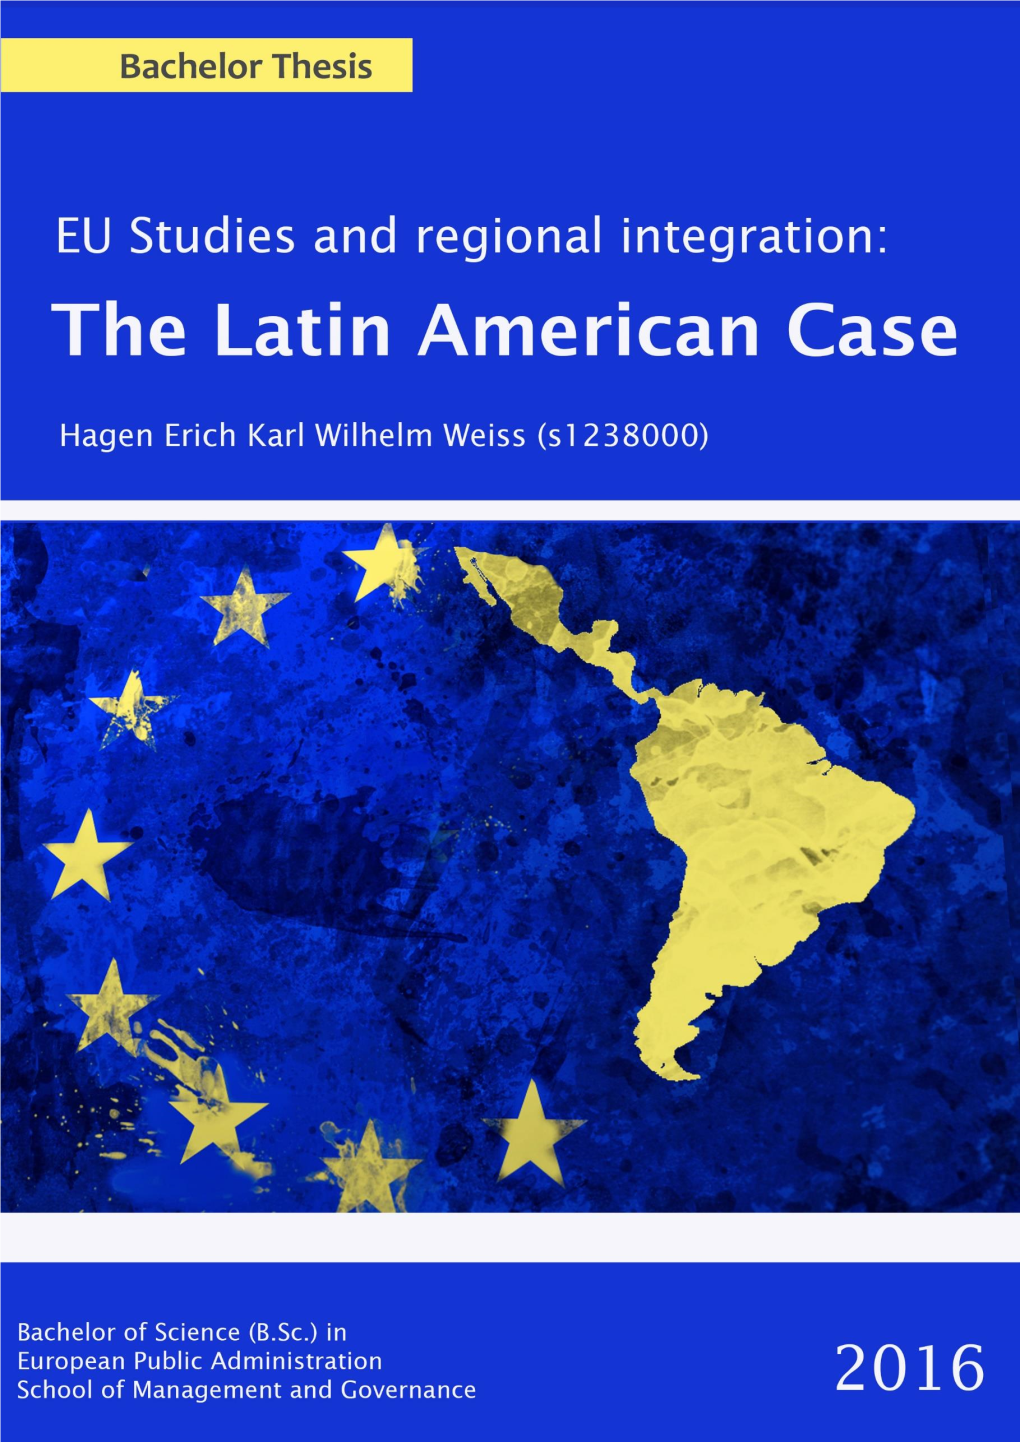 V. Integration in Latin America